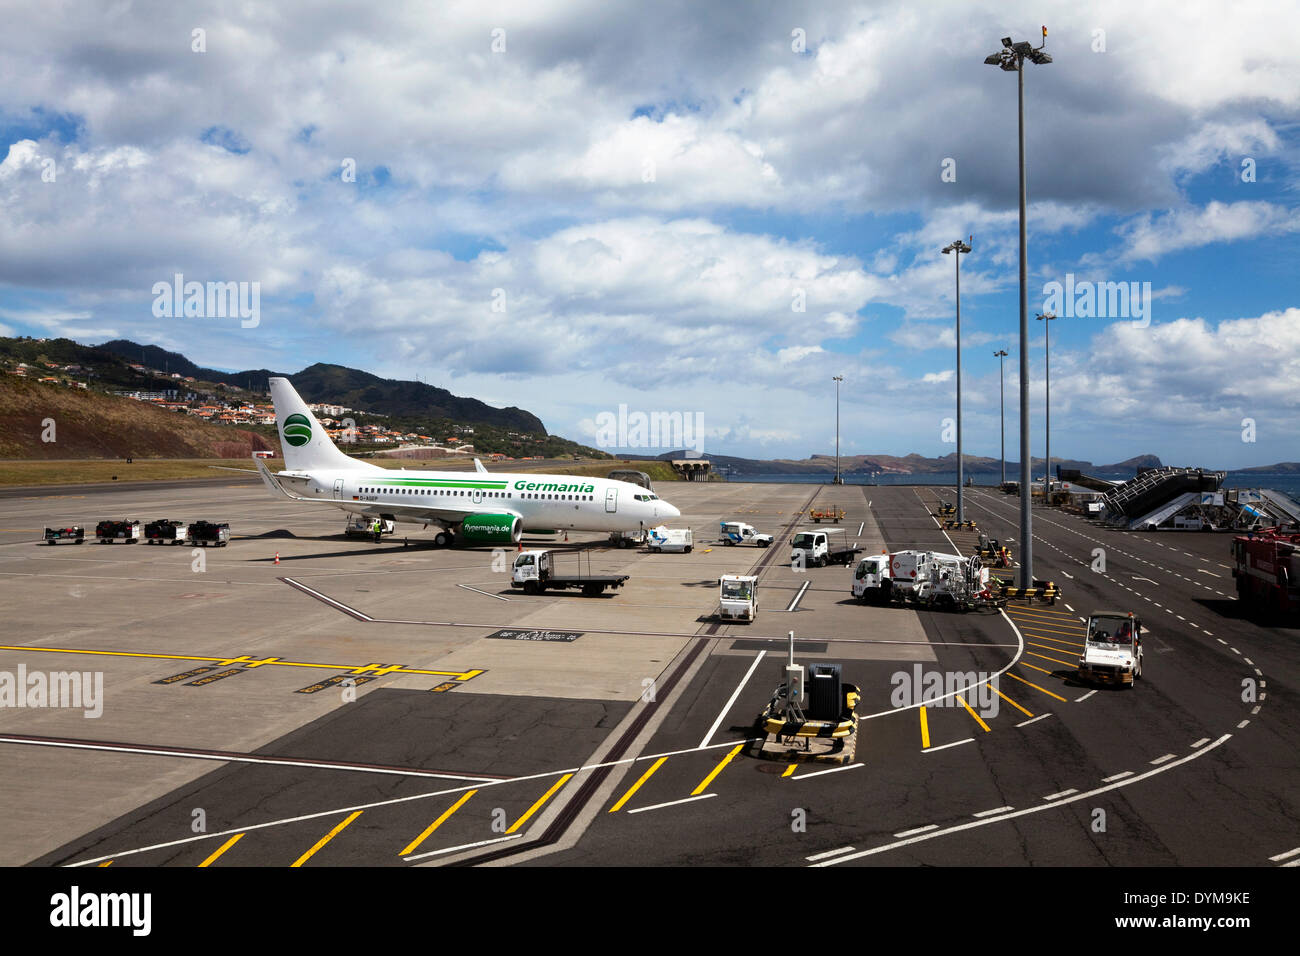 Flugzeuge von Germania Airlines auf dem Rollfeld, Flughafen Funchal, Funchal, Madeira Insel, Portugal Stockfoto